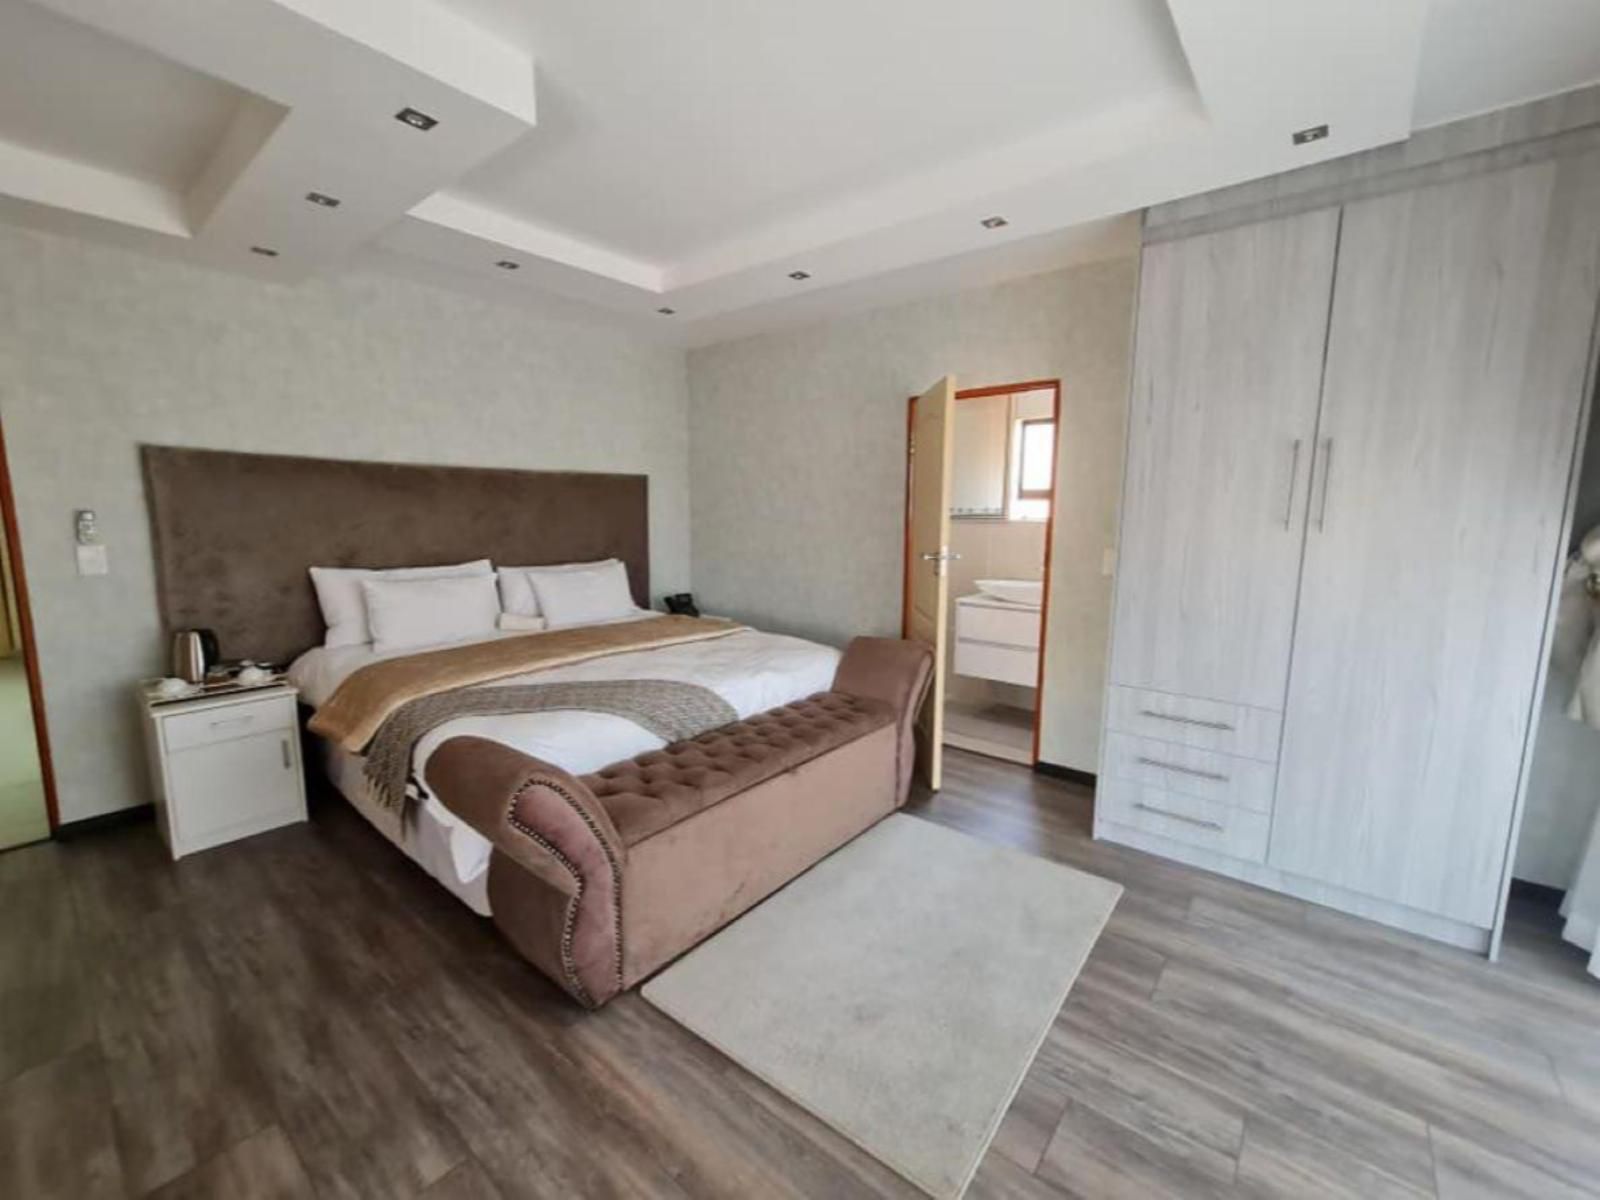 Kliprivier Guest House Eikenhof Johannesburg Gauteng South Africa Unsaturated, Bedroom